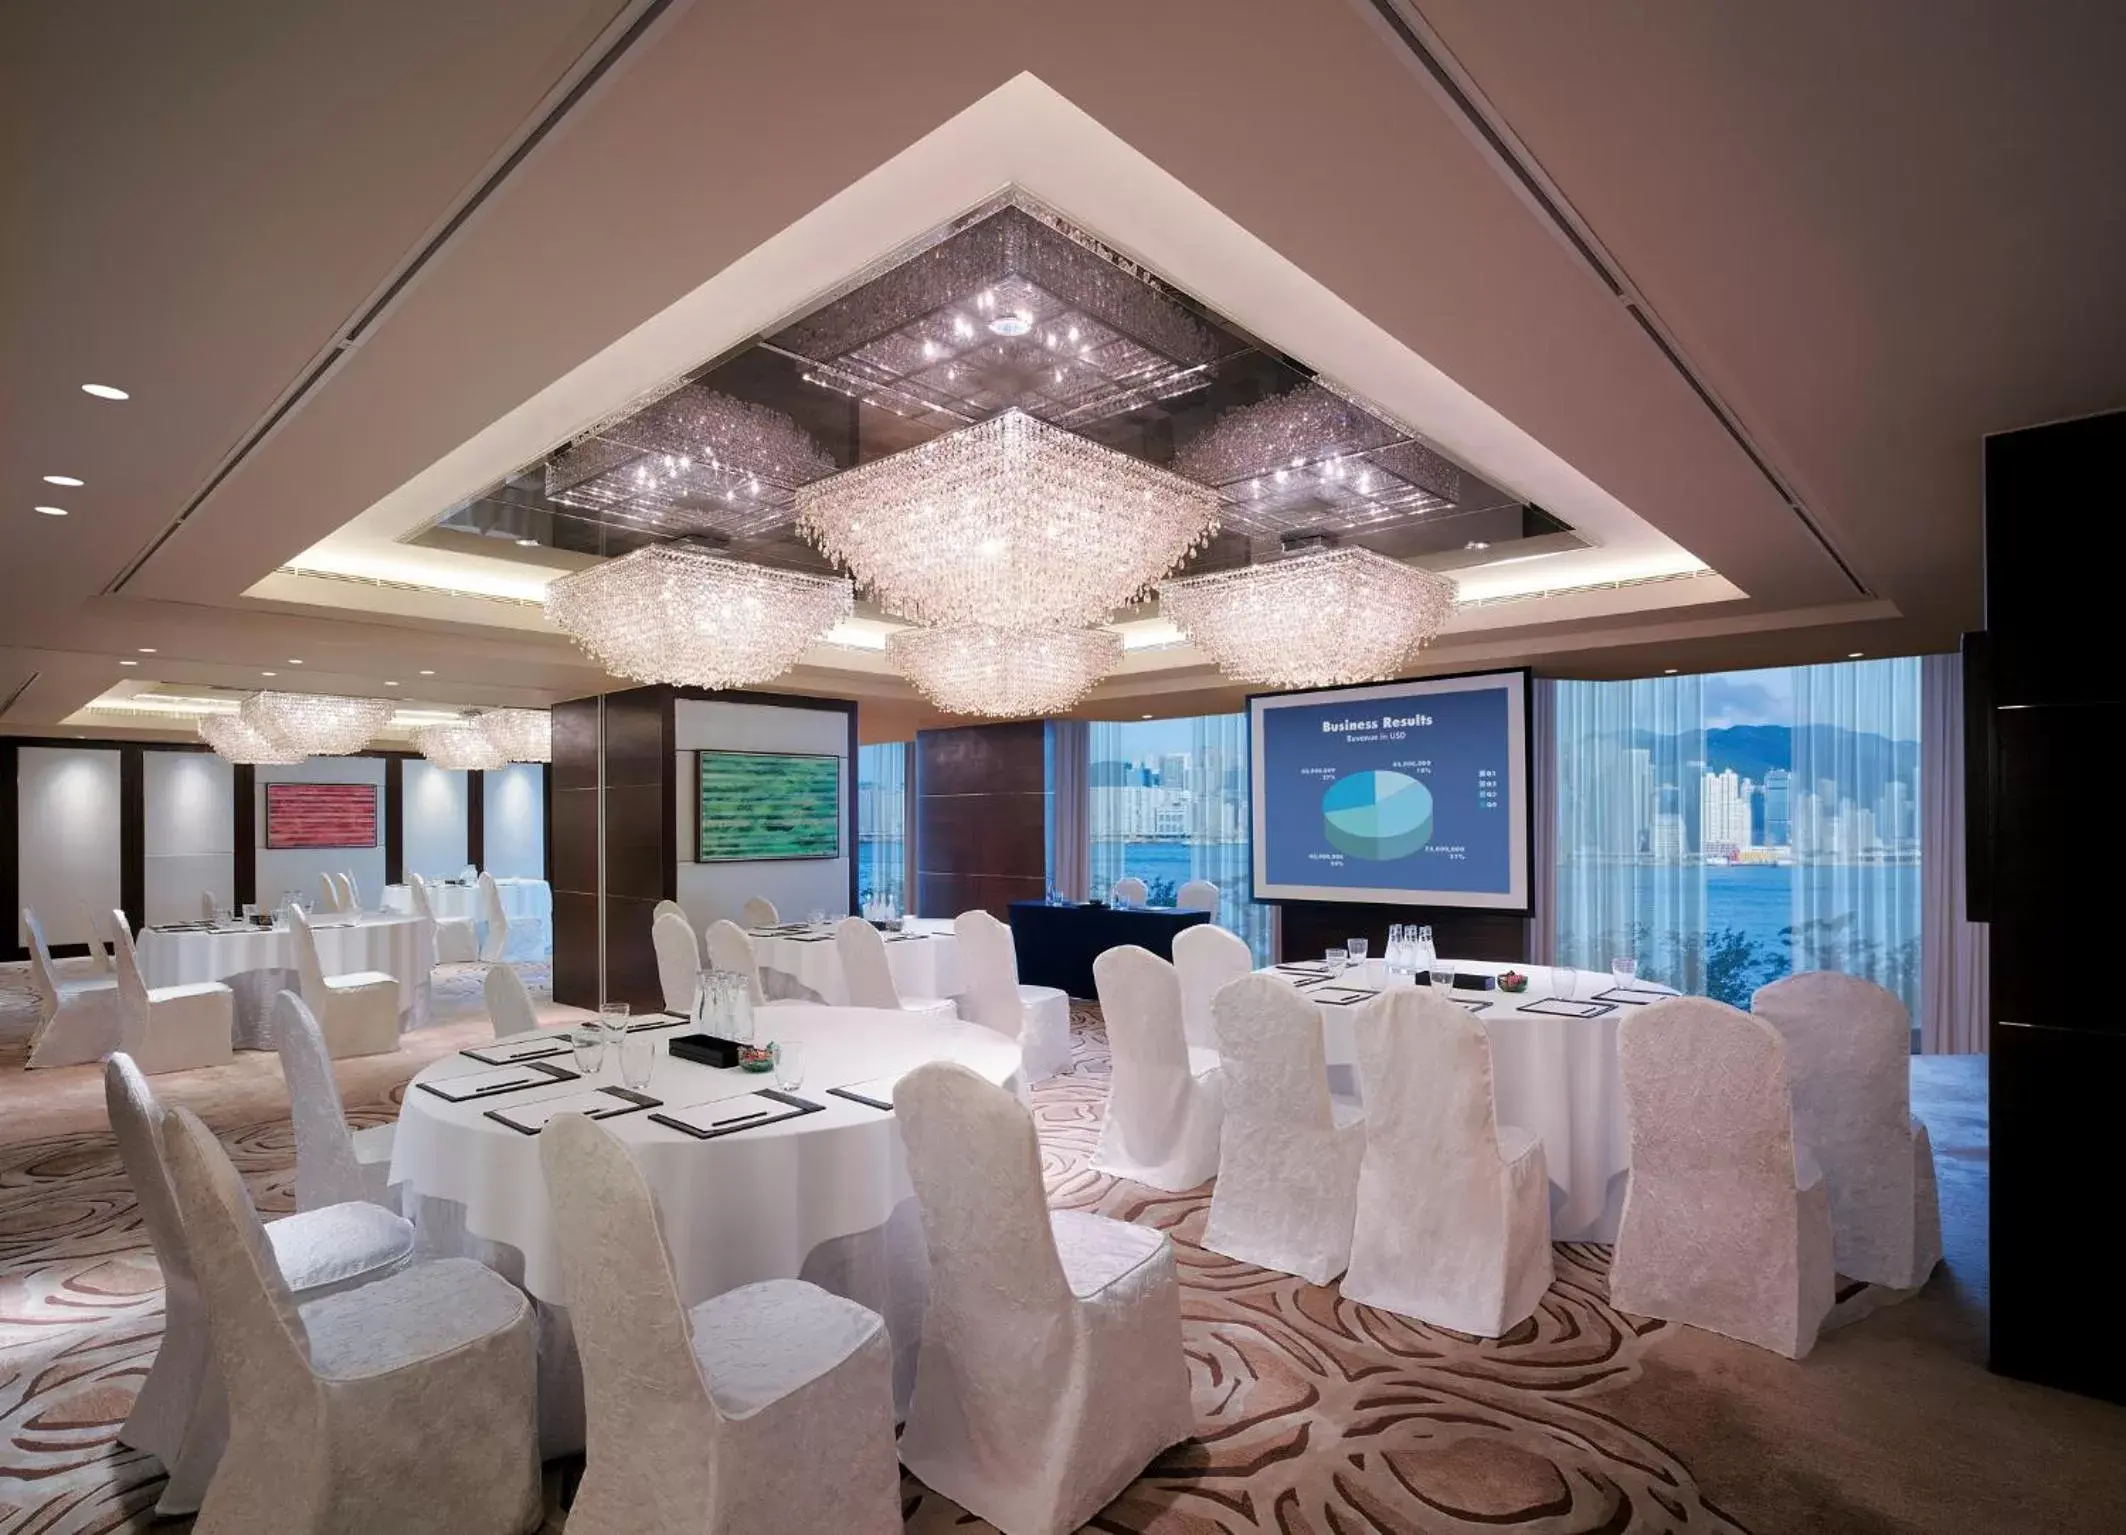 Banquet/Function facilities, Banquet Facilities in Kowloon Shangri-La, Hong Kong